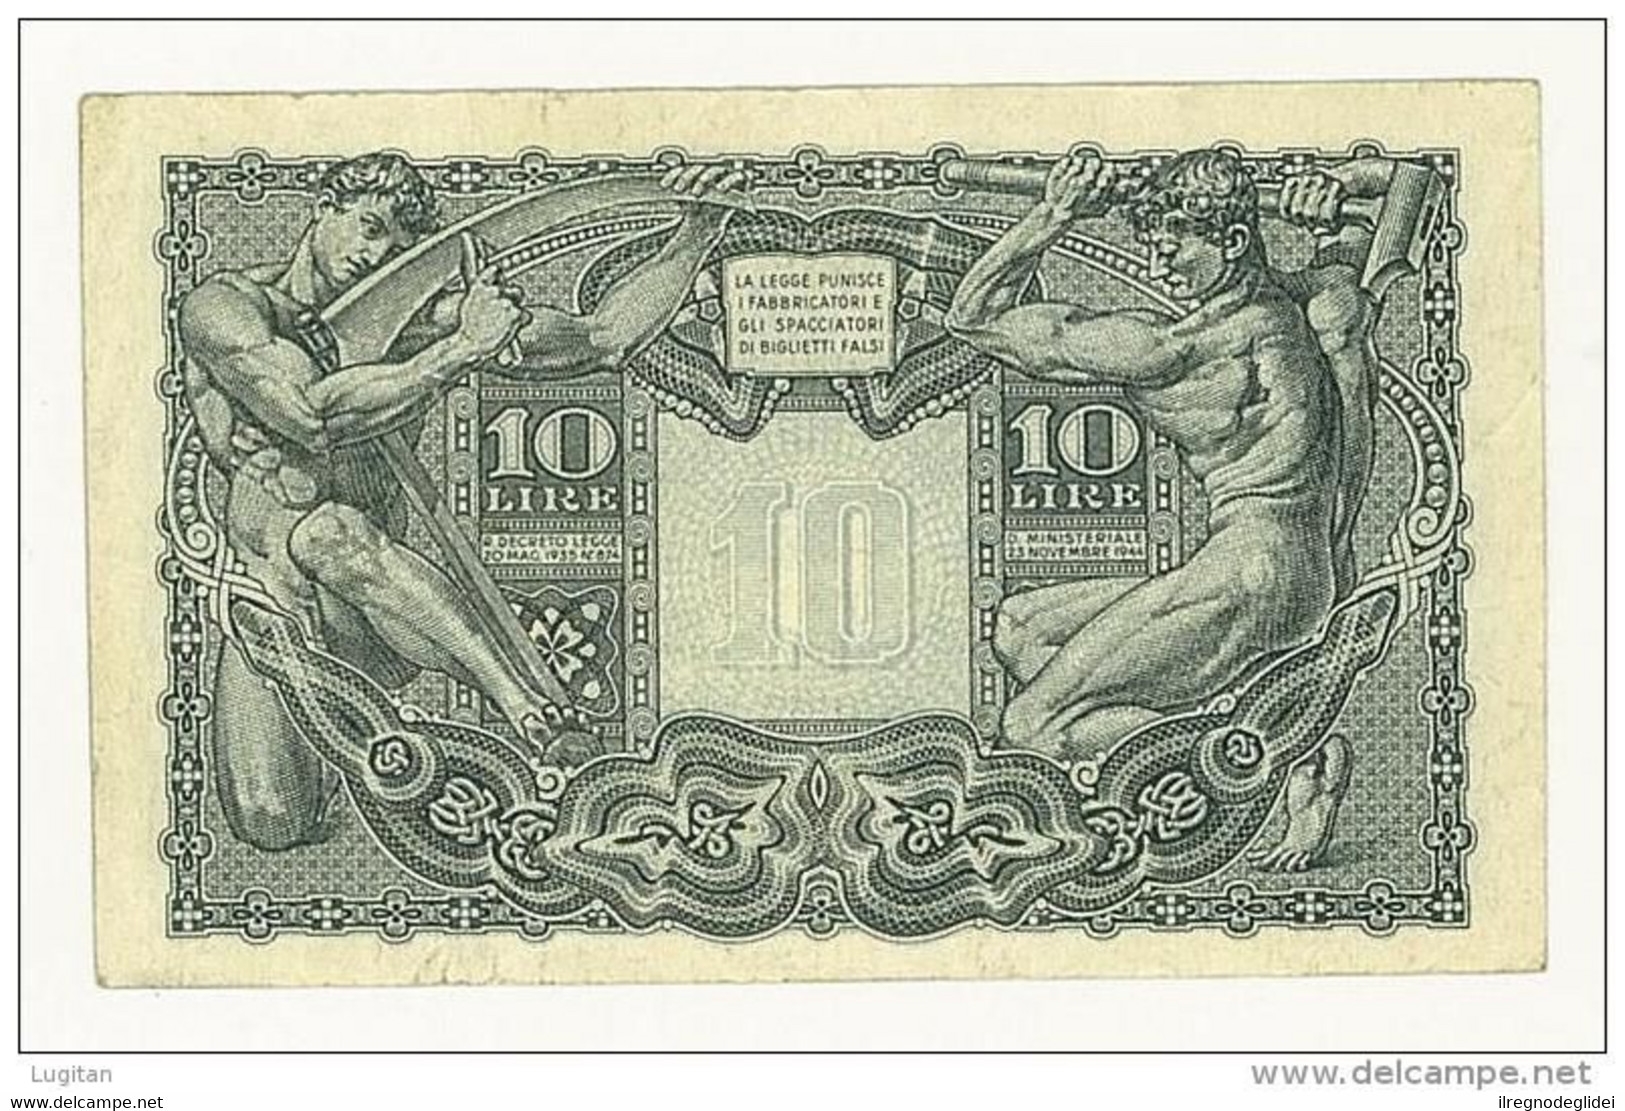 CARTAMONETA - PAPER MONEY - 1944 - 10 LIRE - QUALITY SPL - NON STIRATA - TESTA DI GIOVE - BIGLIETTO DI STATO - Italia – 10 Lire